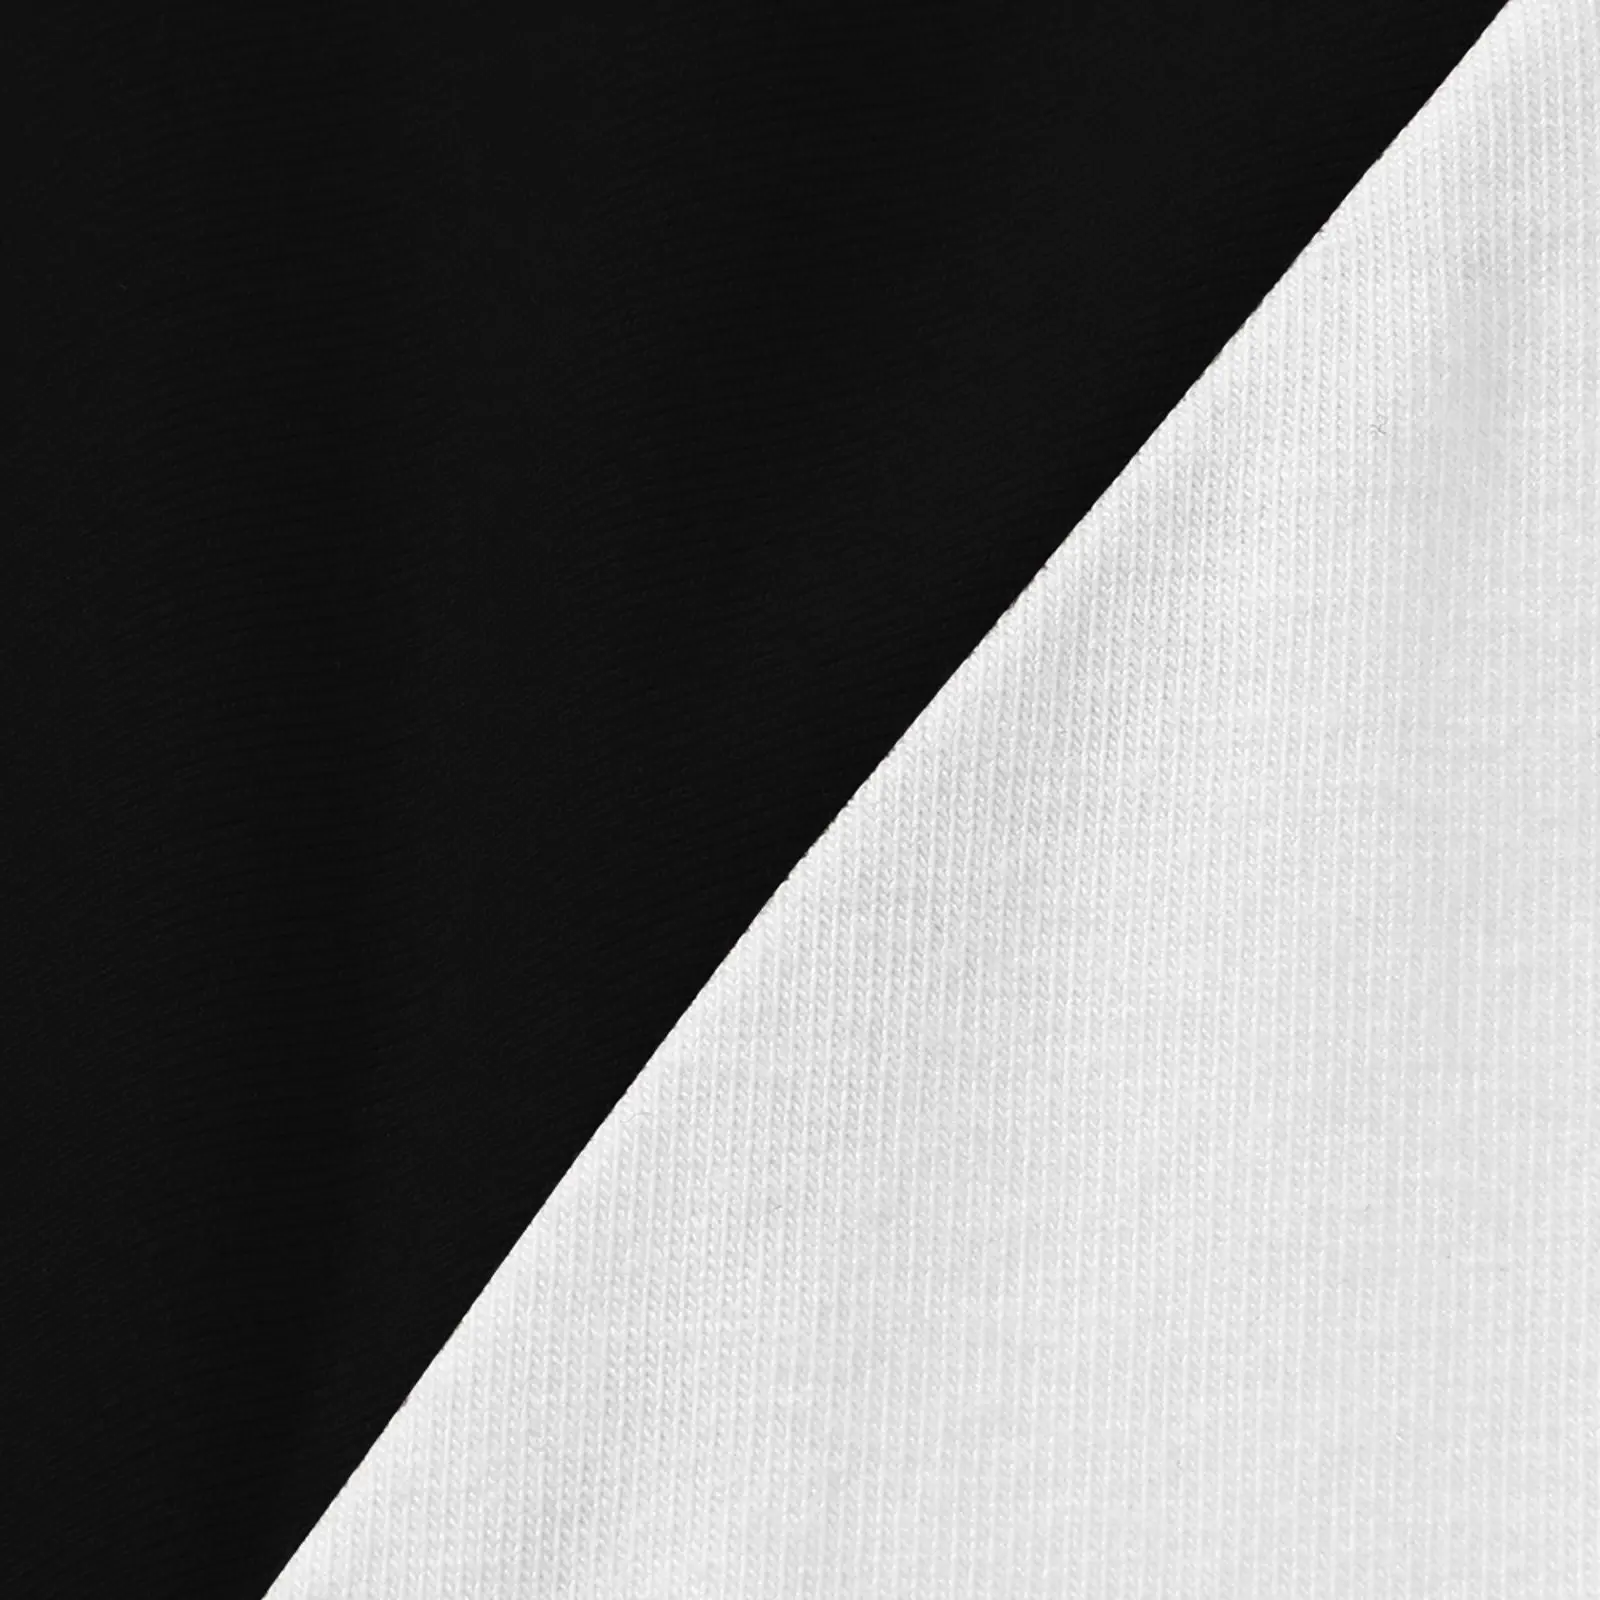 Футболка Neutral milk hotel, забавная футболка, пустые футболки, спортивные рубашки, футболки на заказ, создайте свои собственные мужские футболки с длинным рукавом